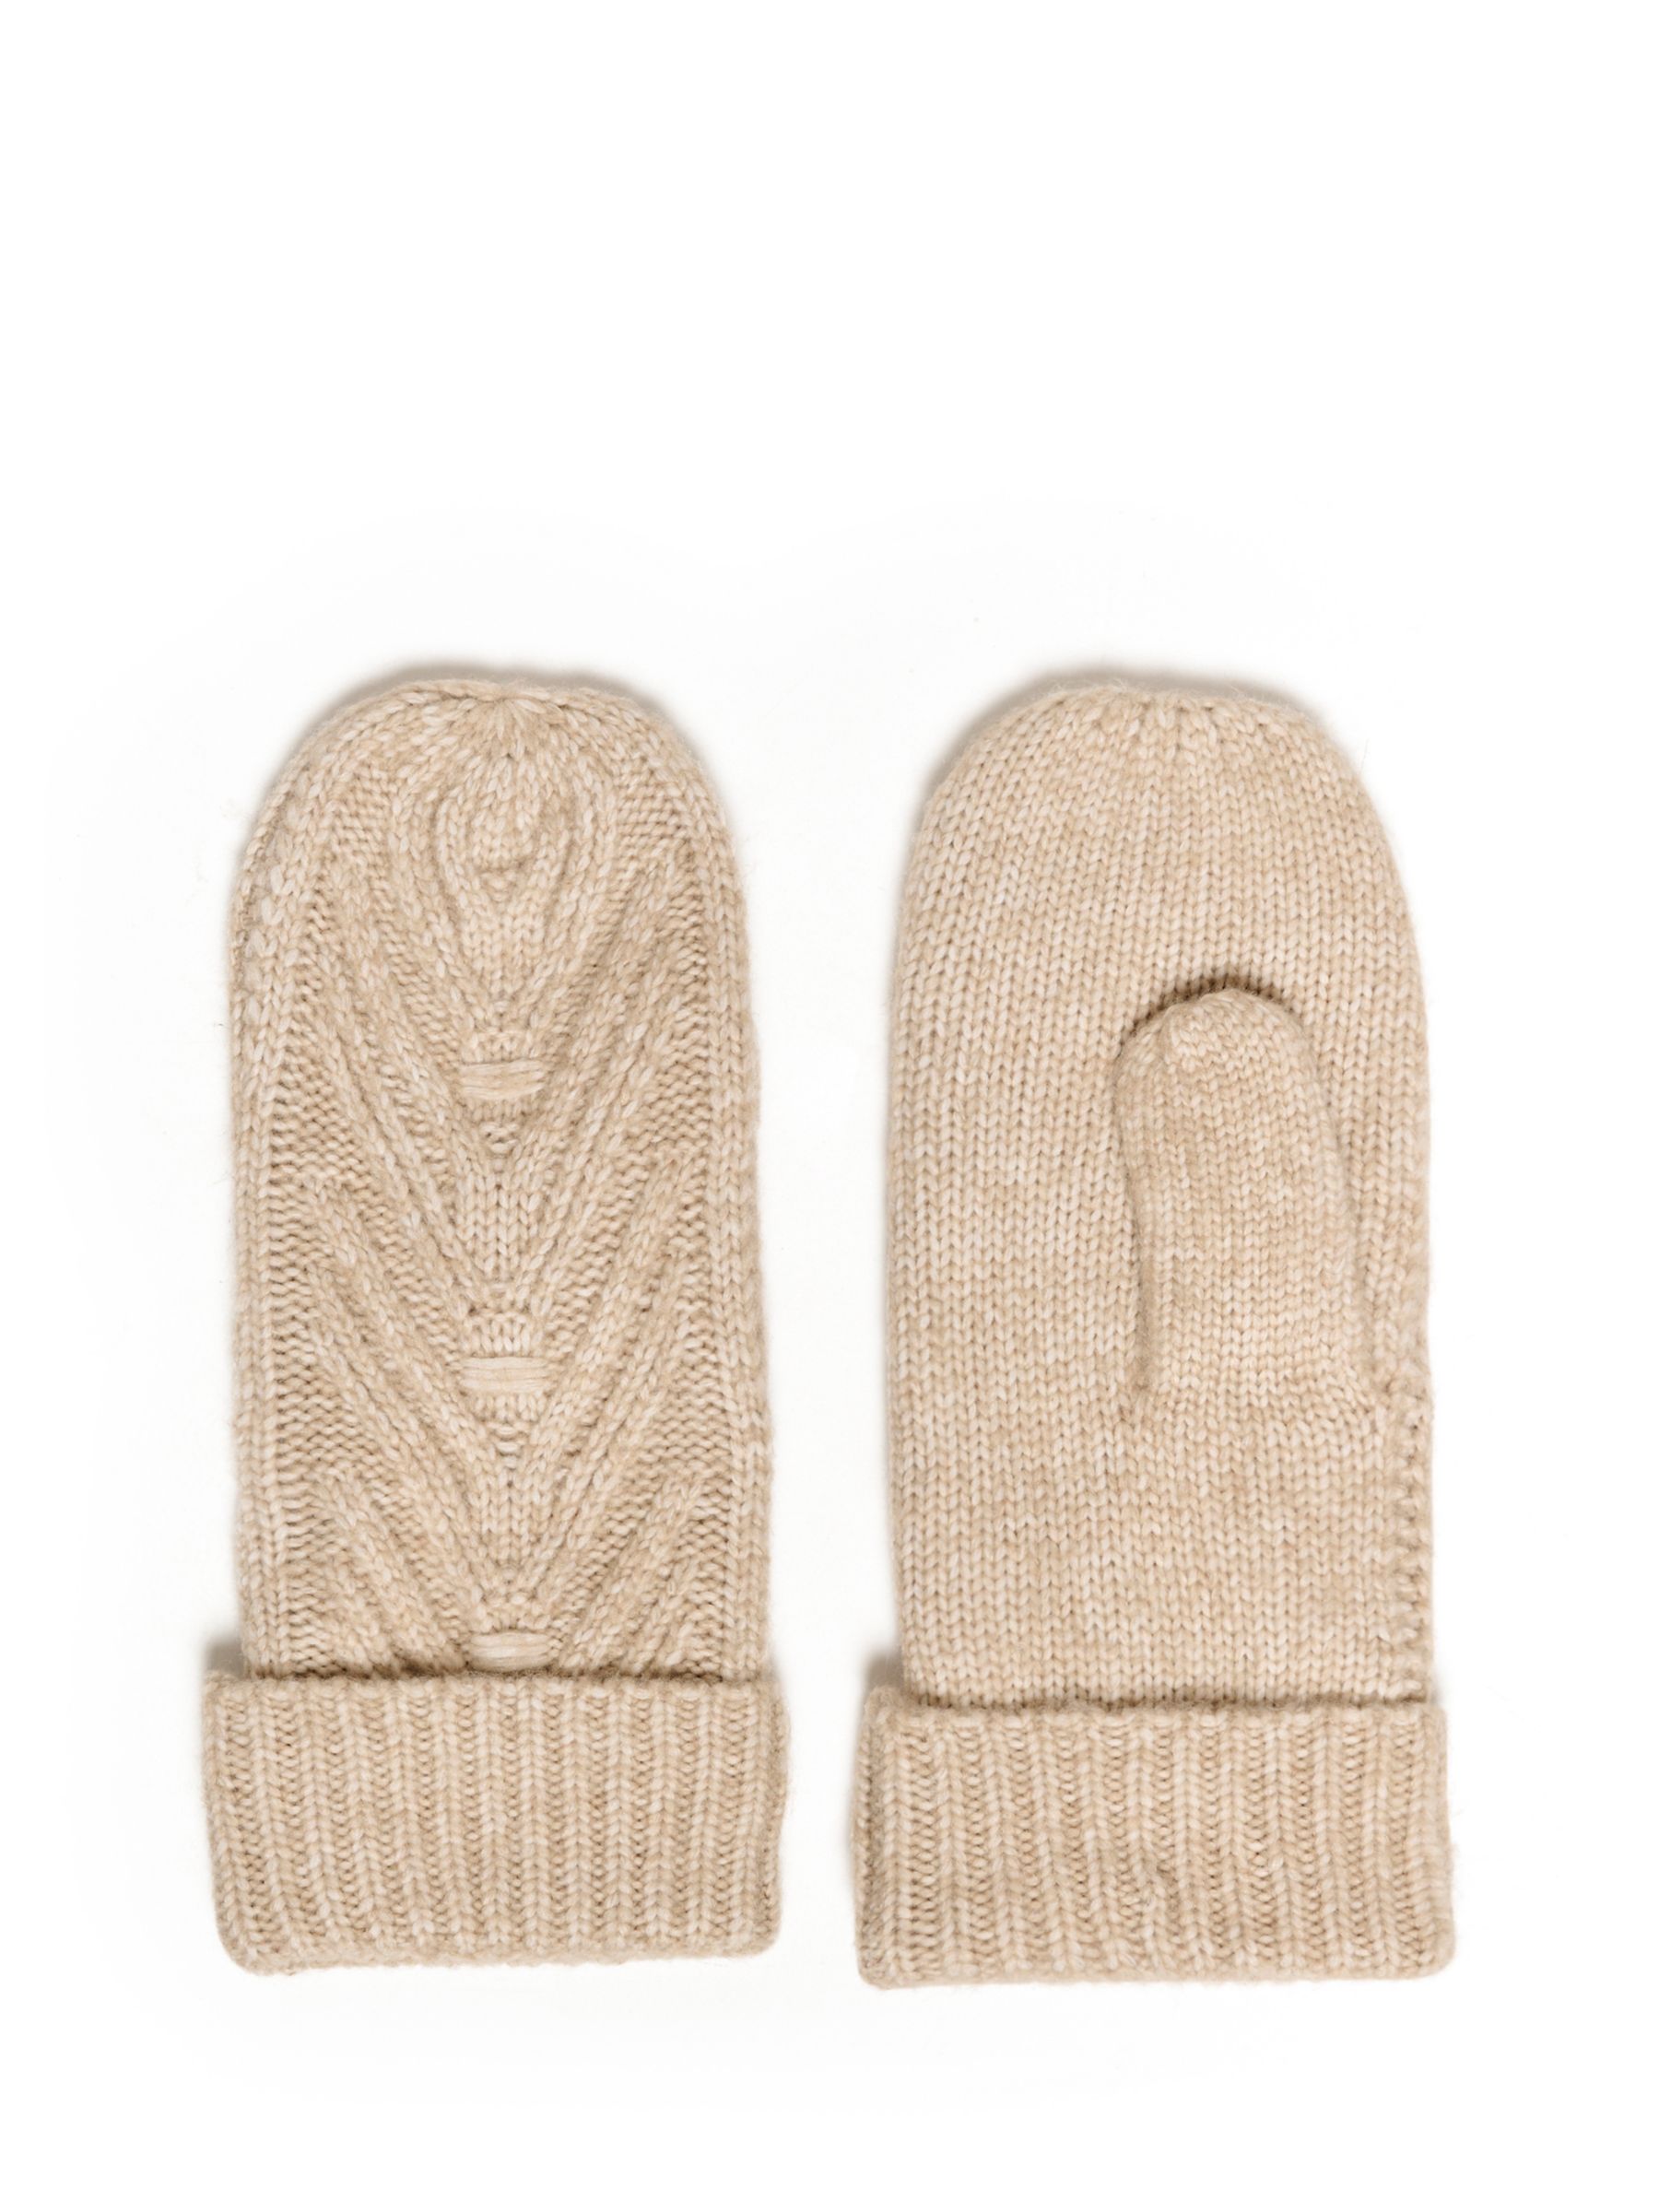 Buy KAFFE Emilie Cable Knit Mitten Gloves, Sand Dollar Melange Online at johnlewis.com